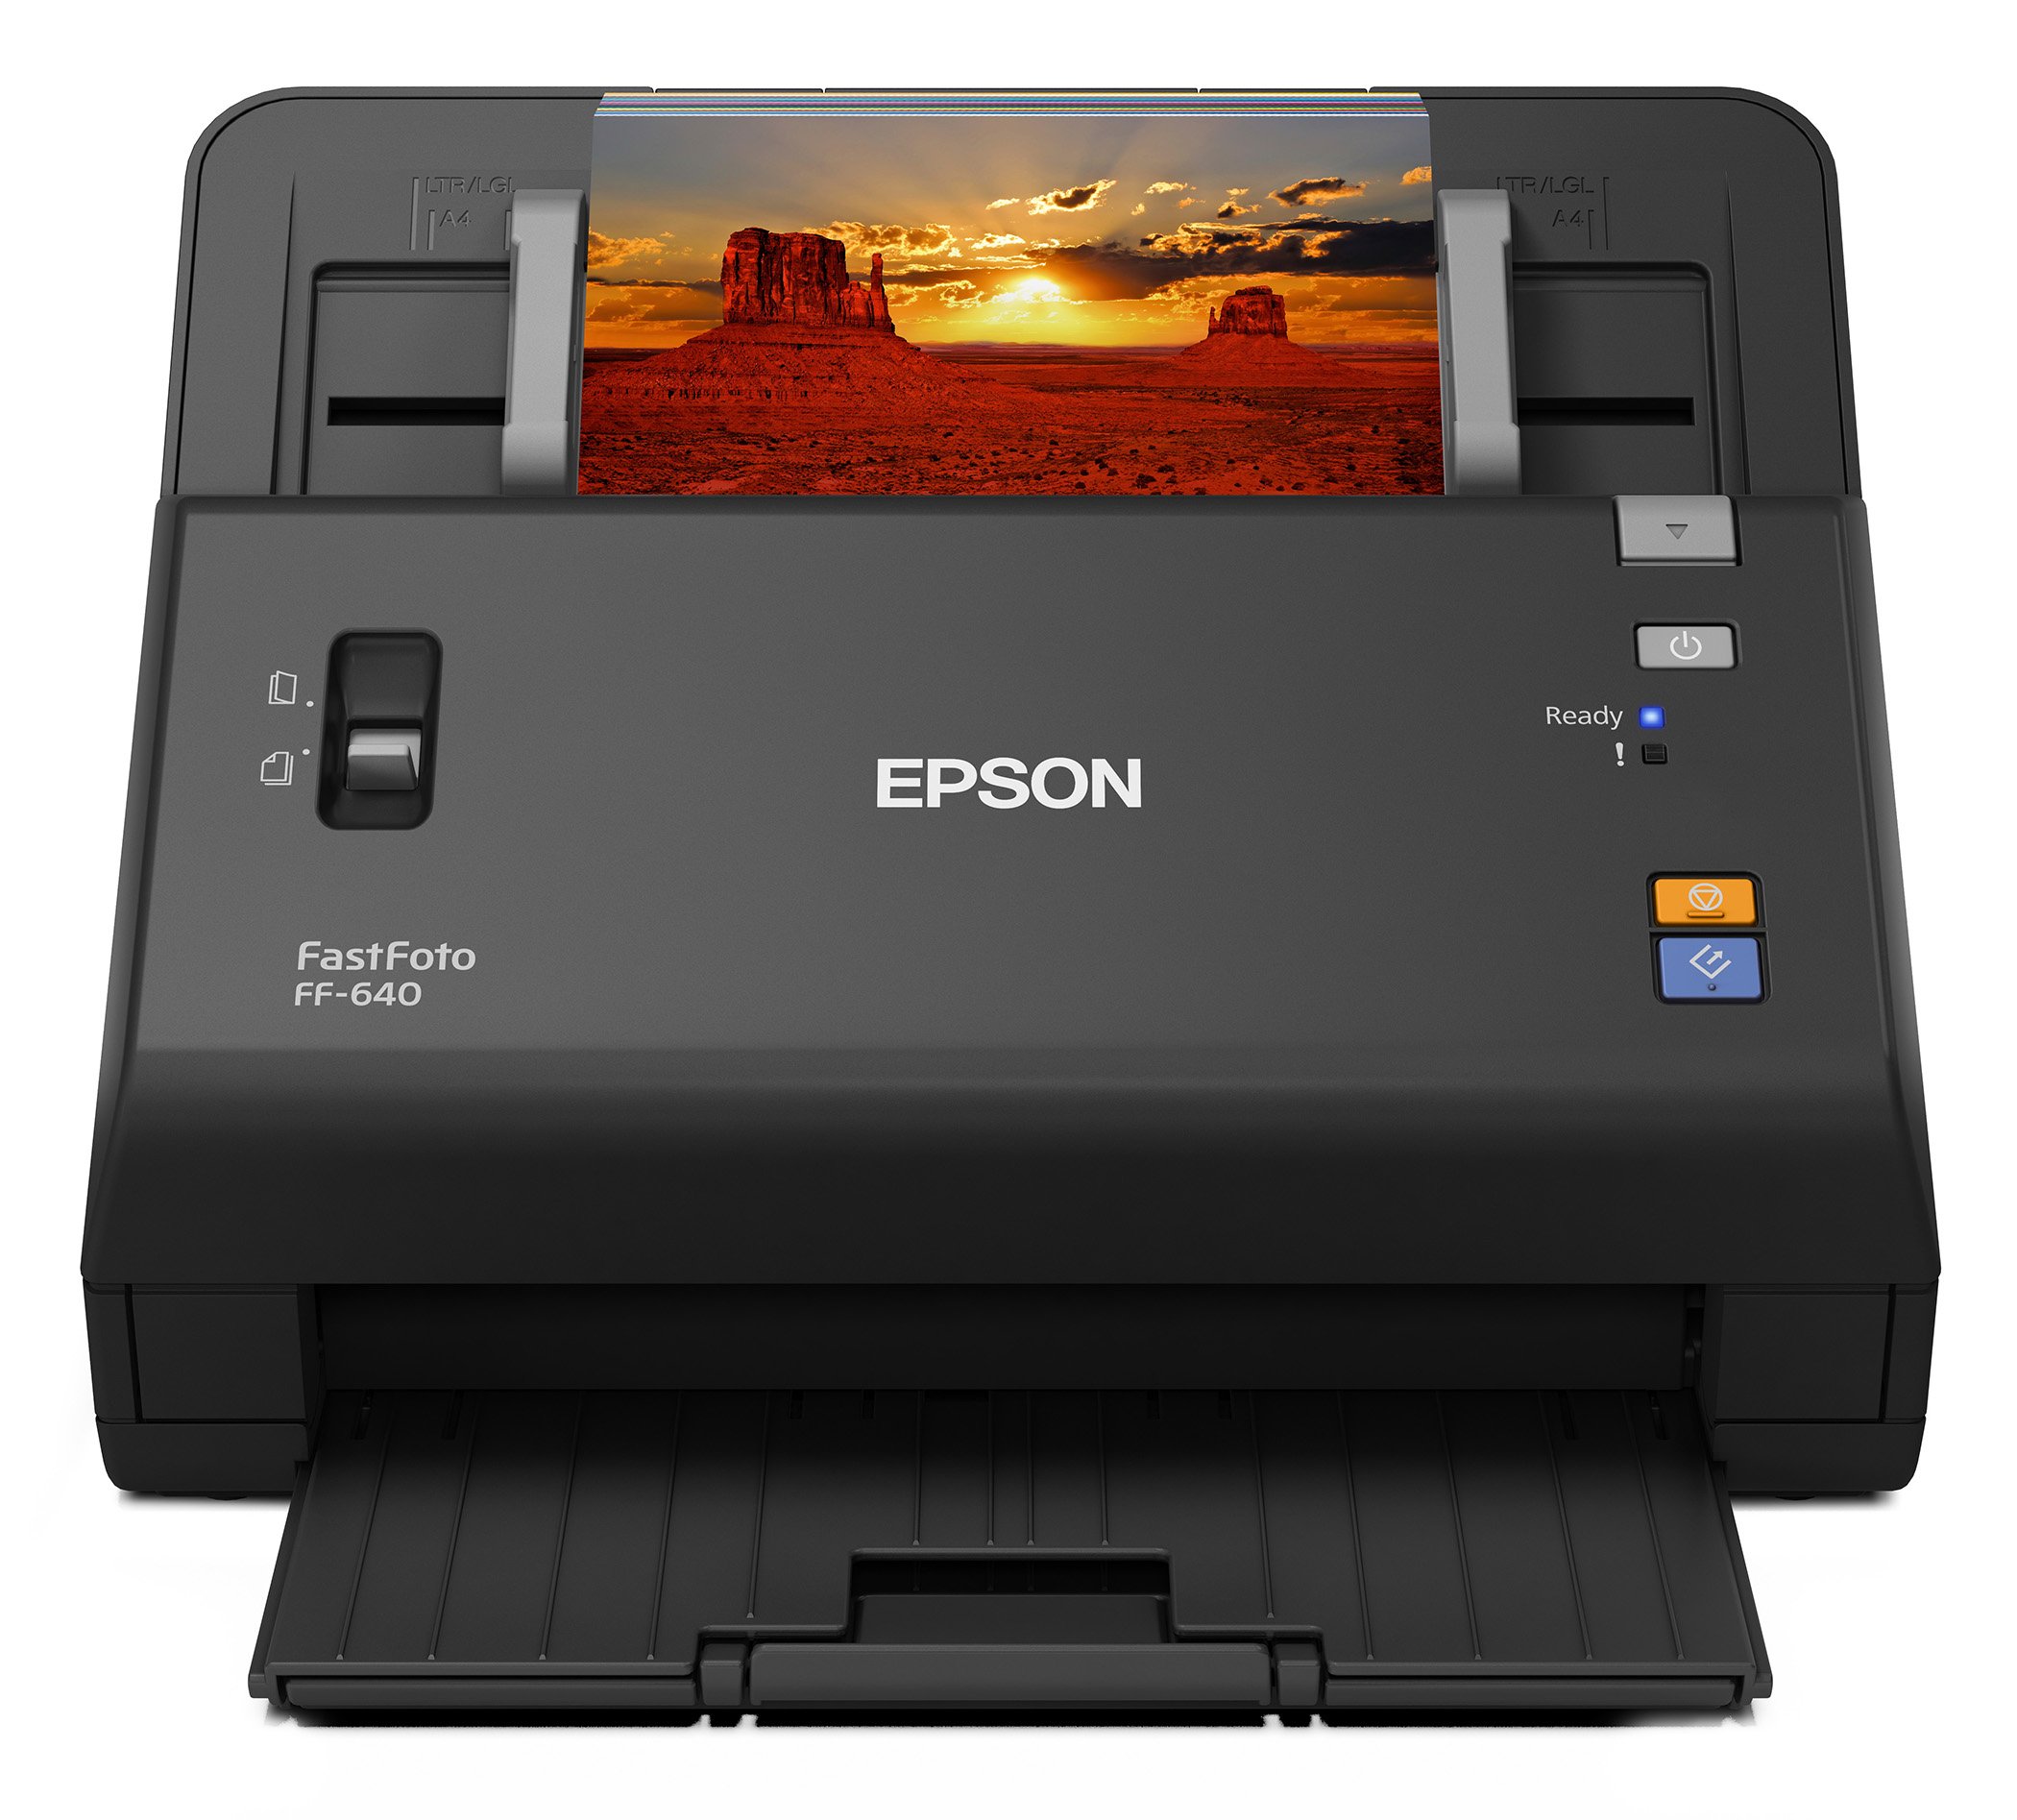 Epson Ff-640 Software For A Mac Os High Sierra